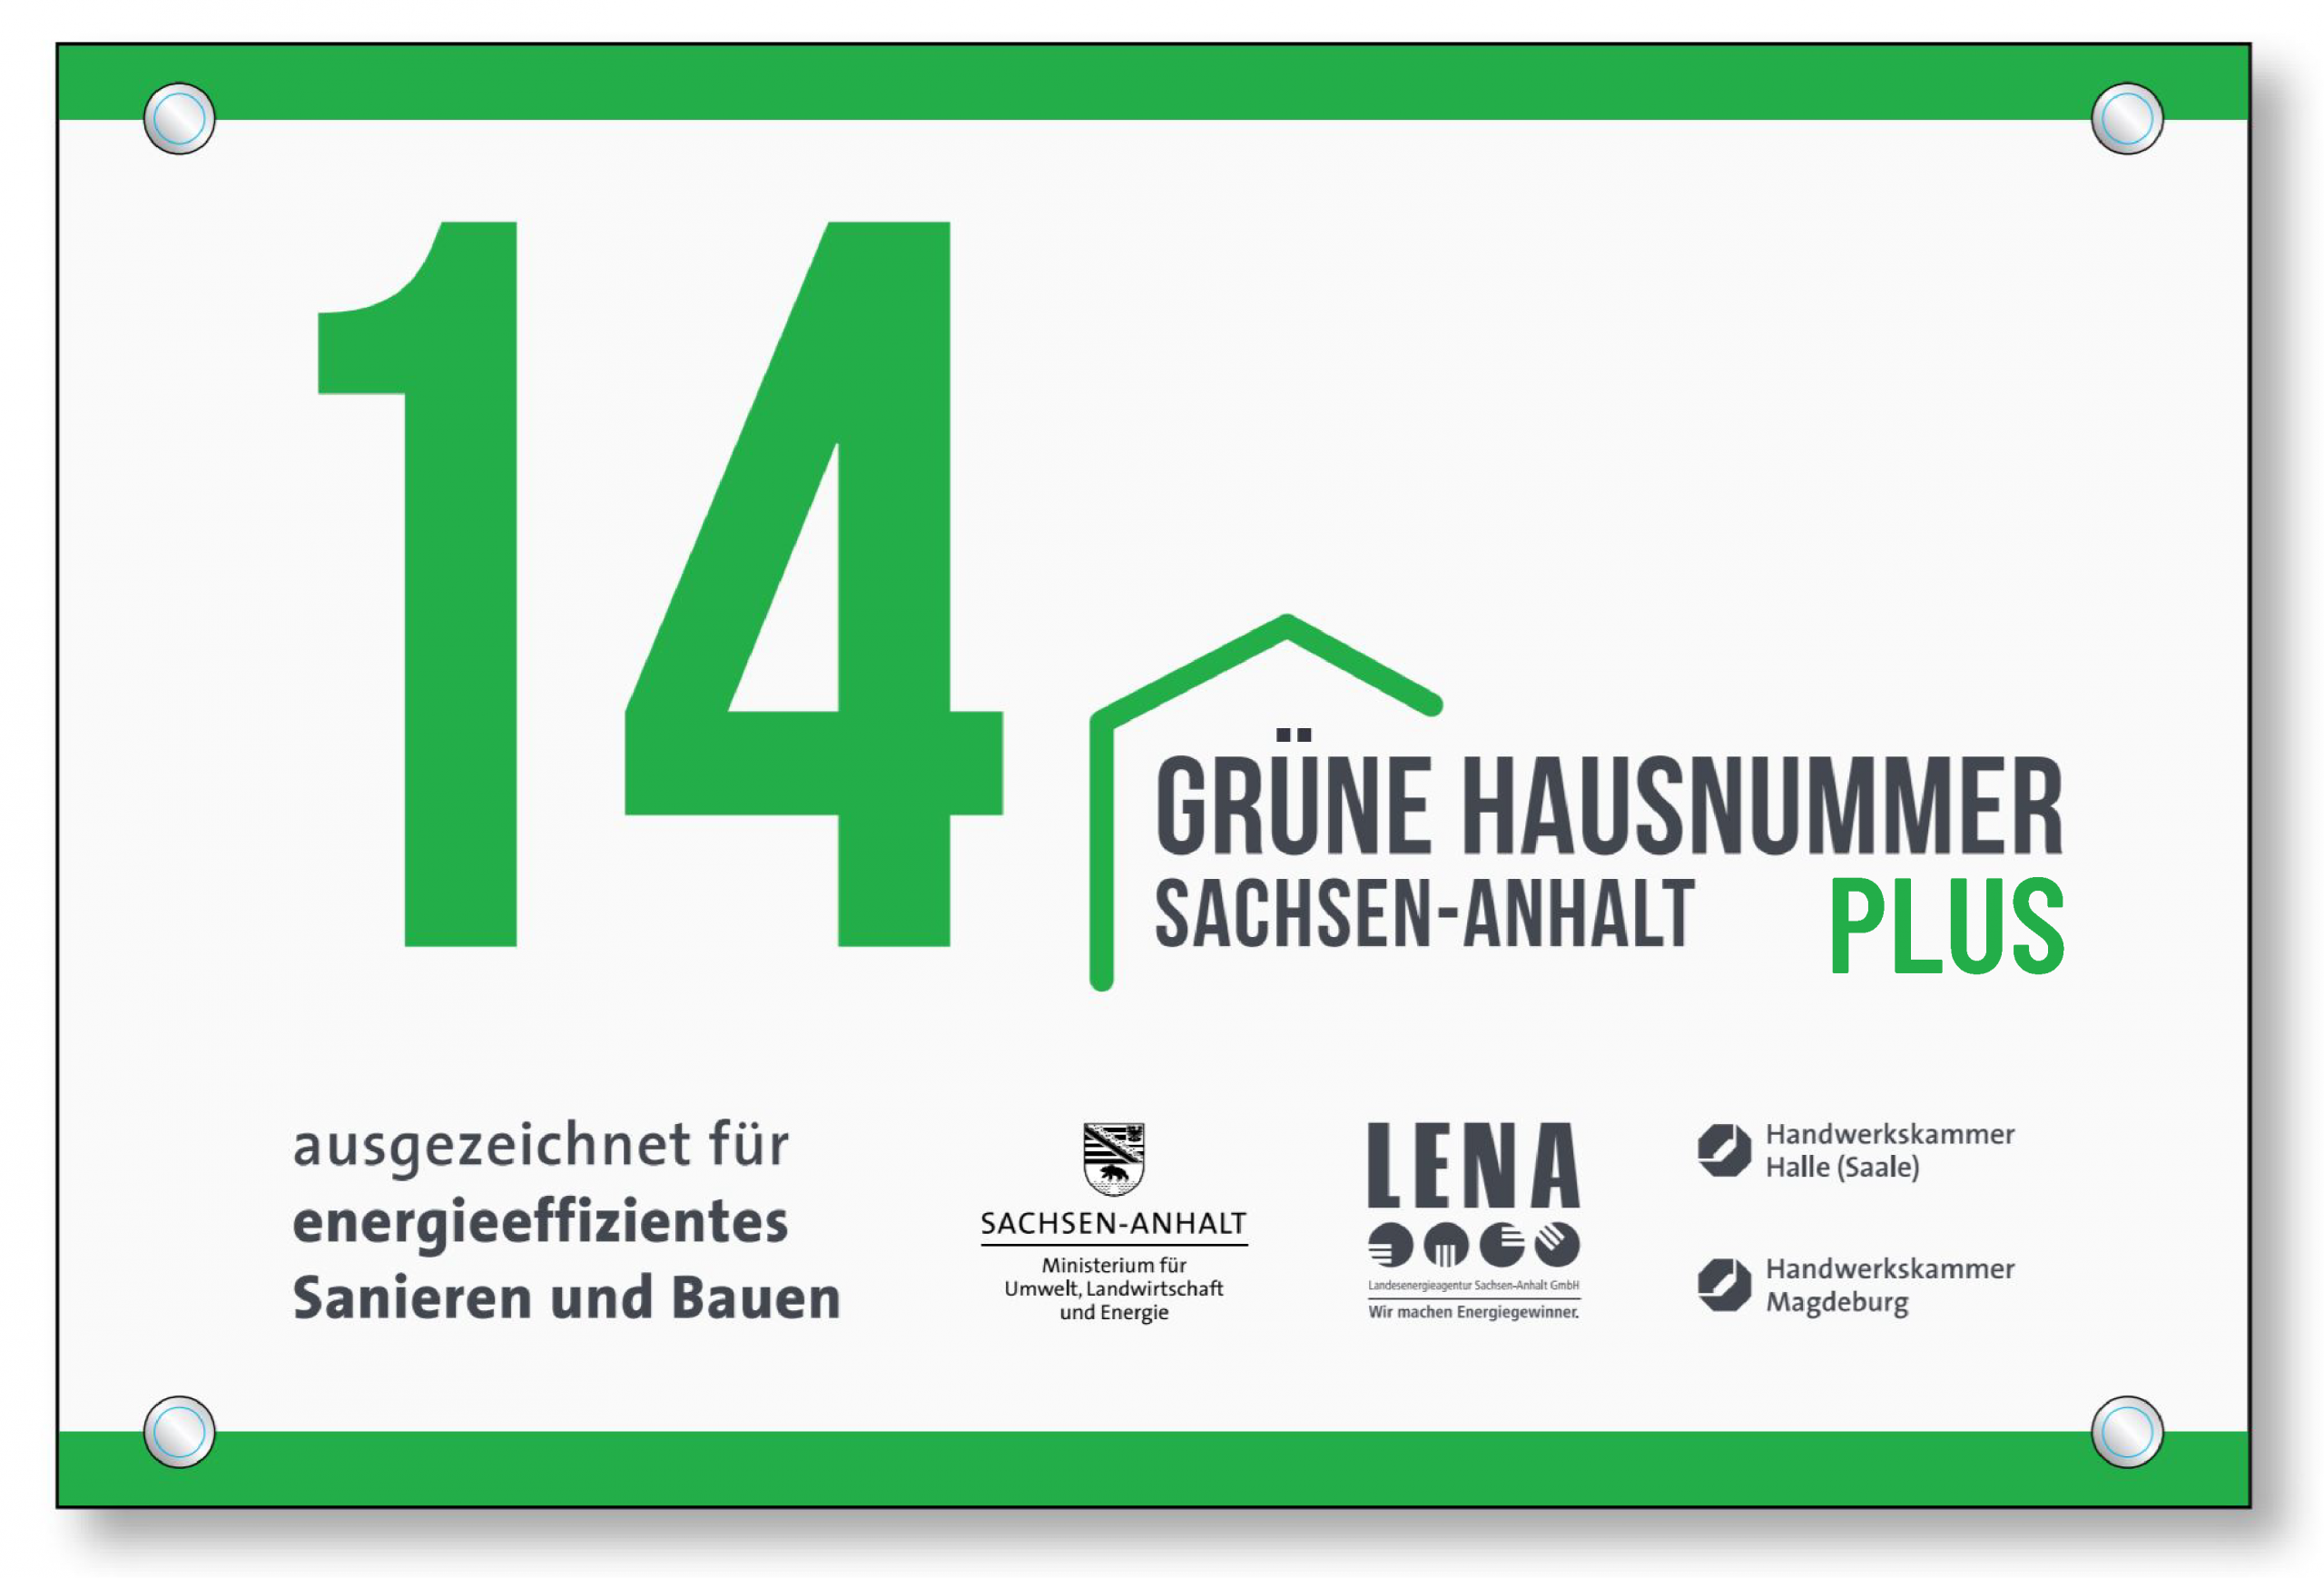 Grüne Hausnummer Plus [(c)LENA]